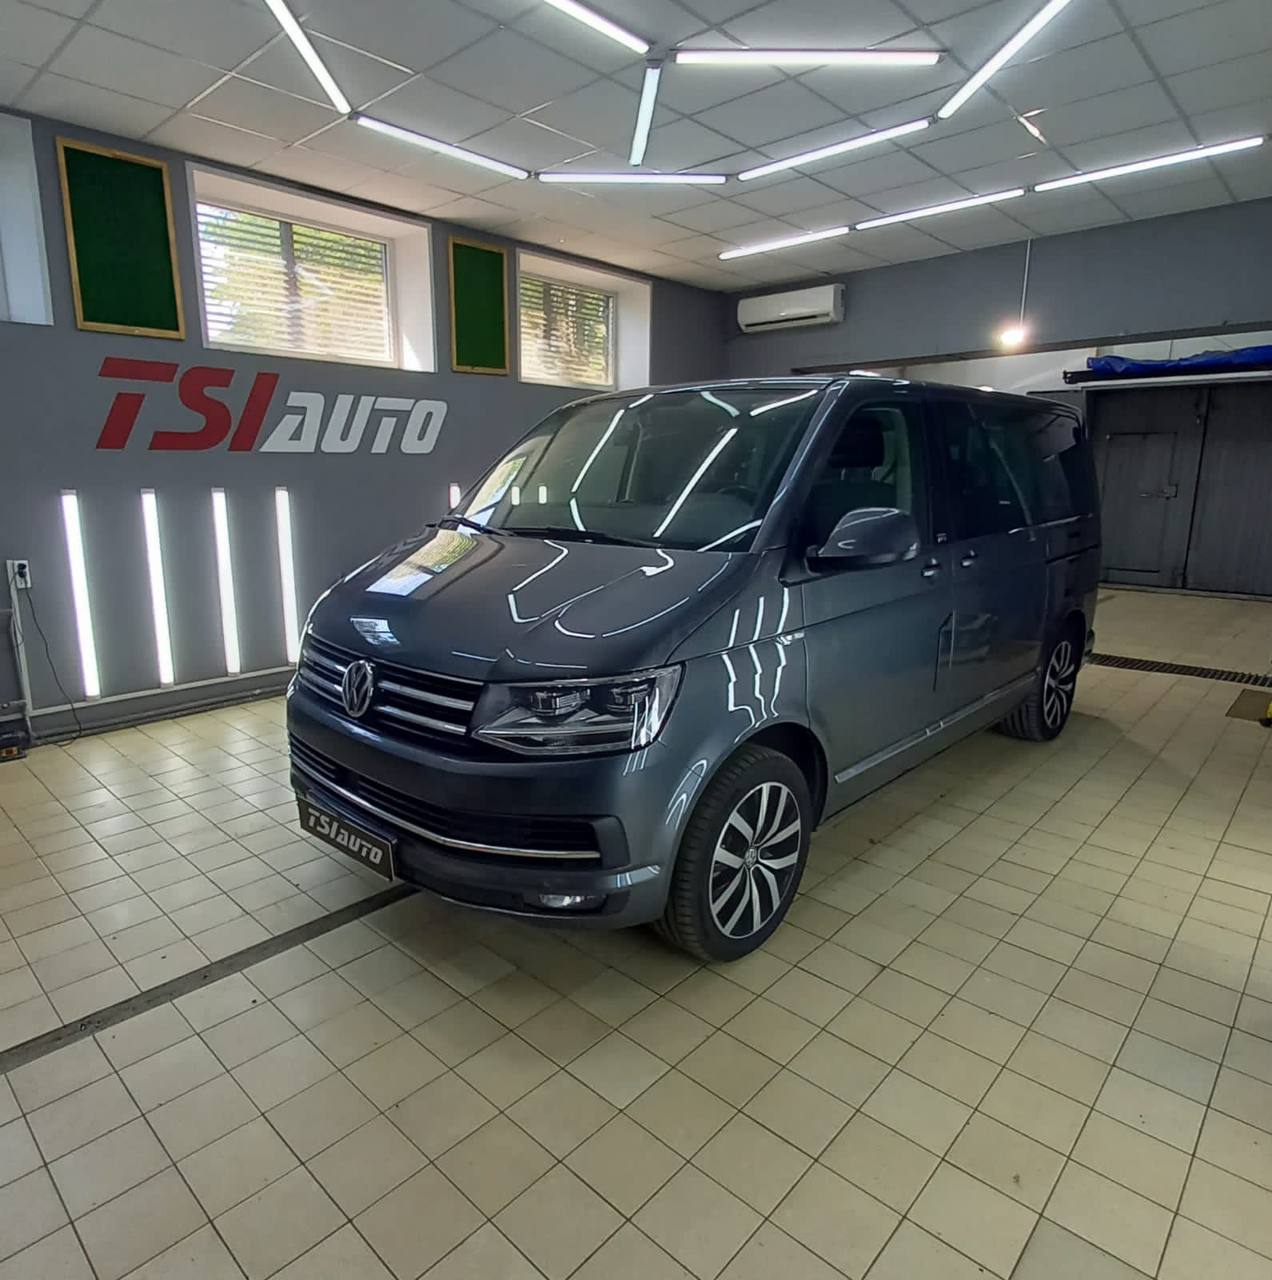 Шумоизоляция Volkswagen Multivan в Воронеже за 1 день фото и цены в пакете Элит Премиум